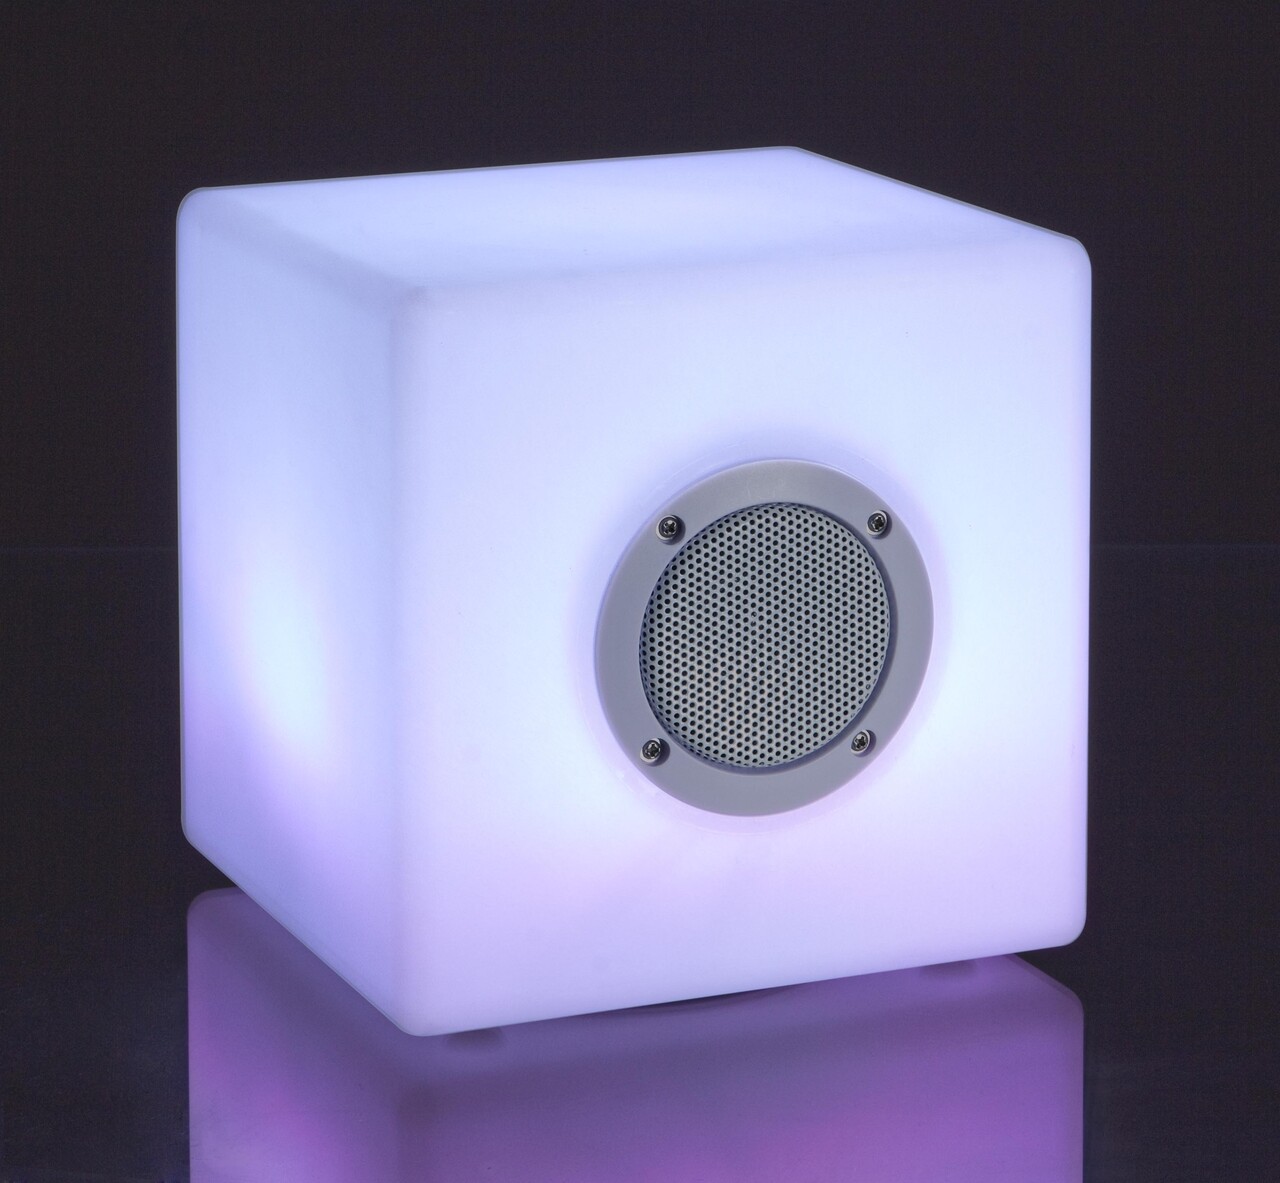 Led lámpa bluetooth hangszóróval, bizzotto cube, 7 színben, usb kábel + távirányító, 20x20x20 cm, 20x20x20 cm